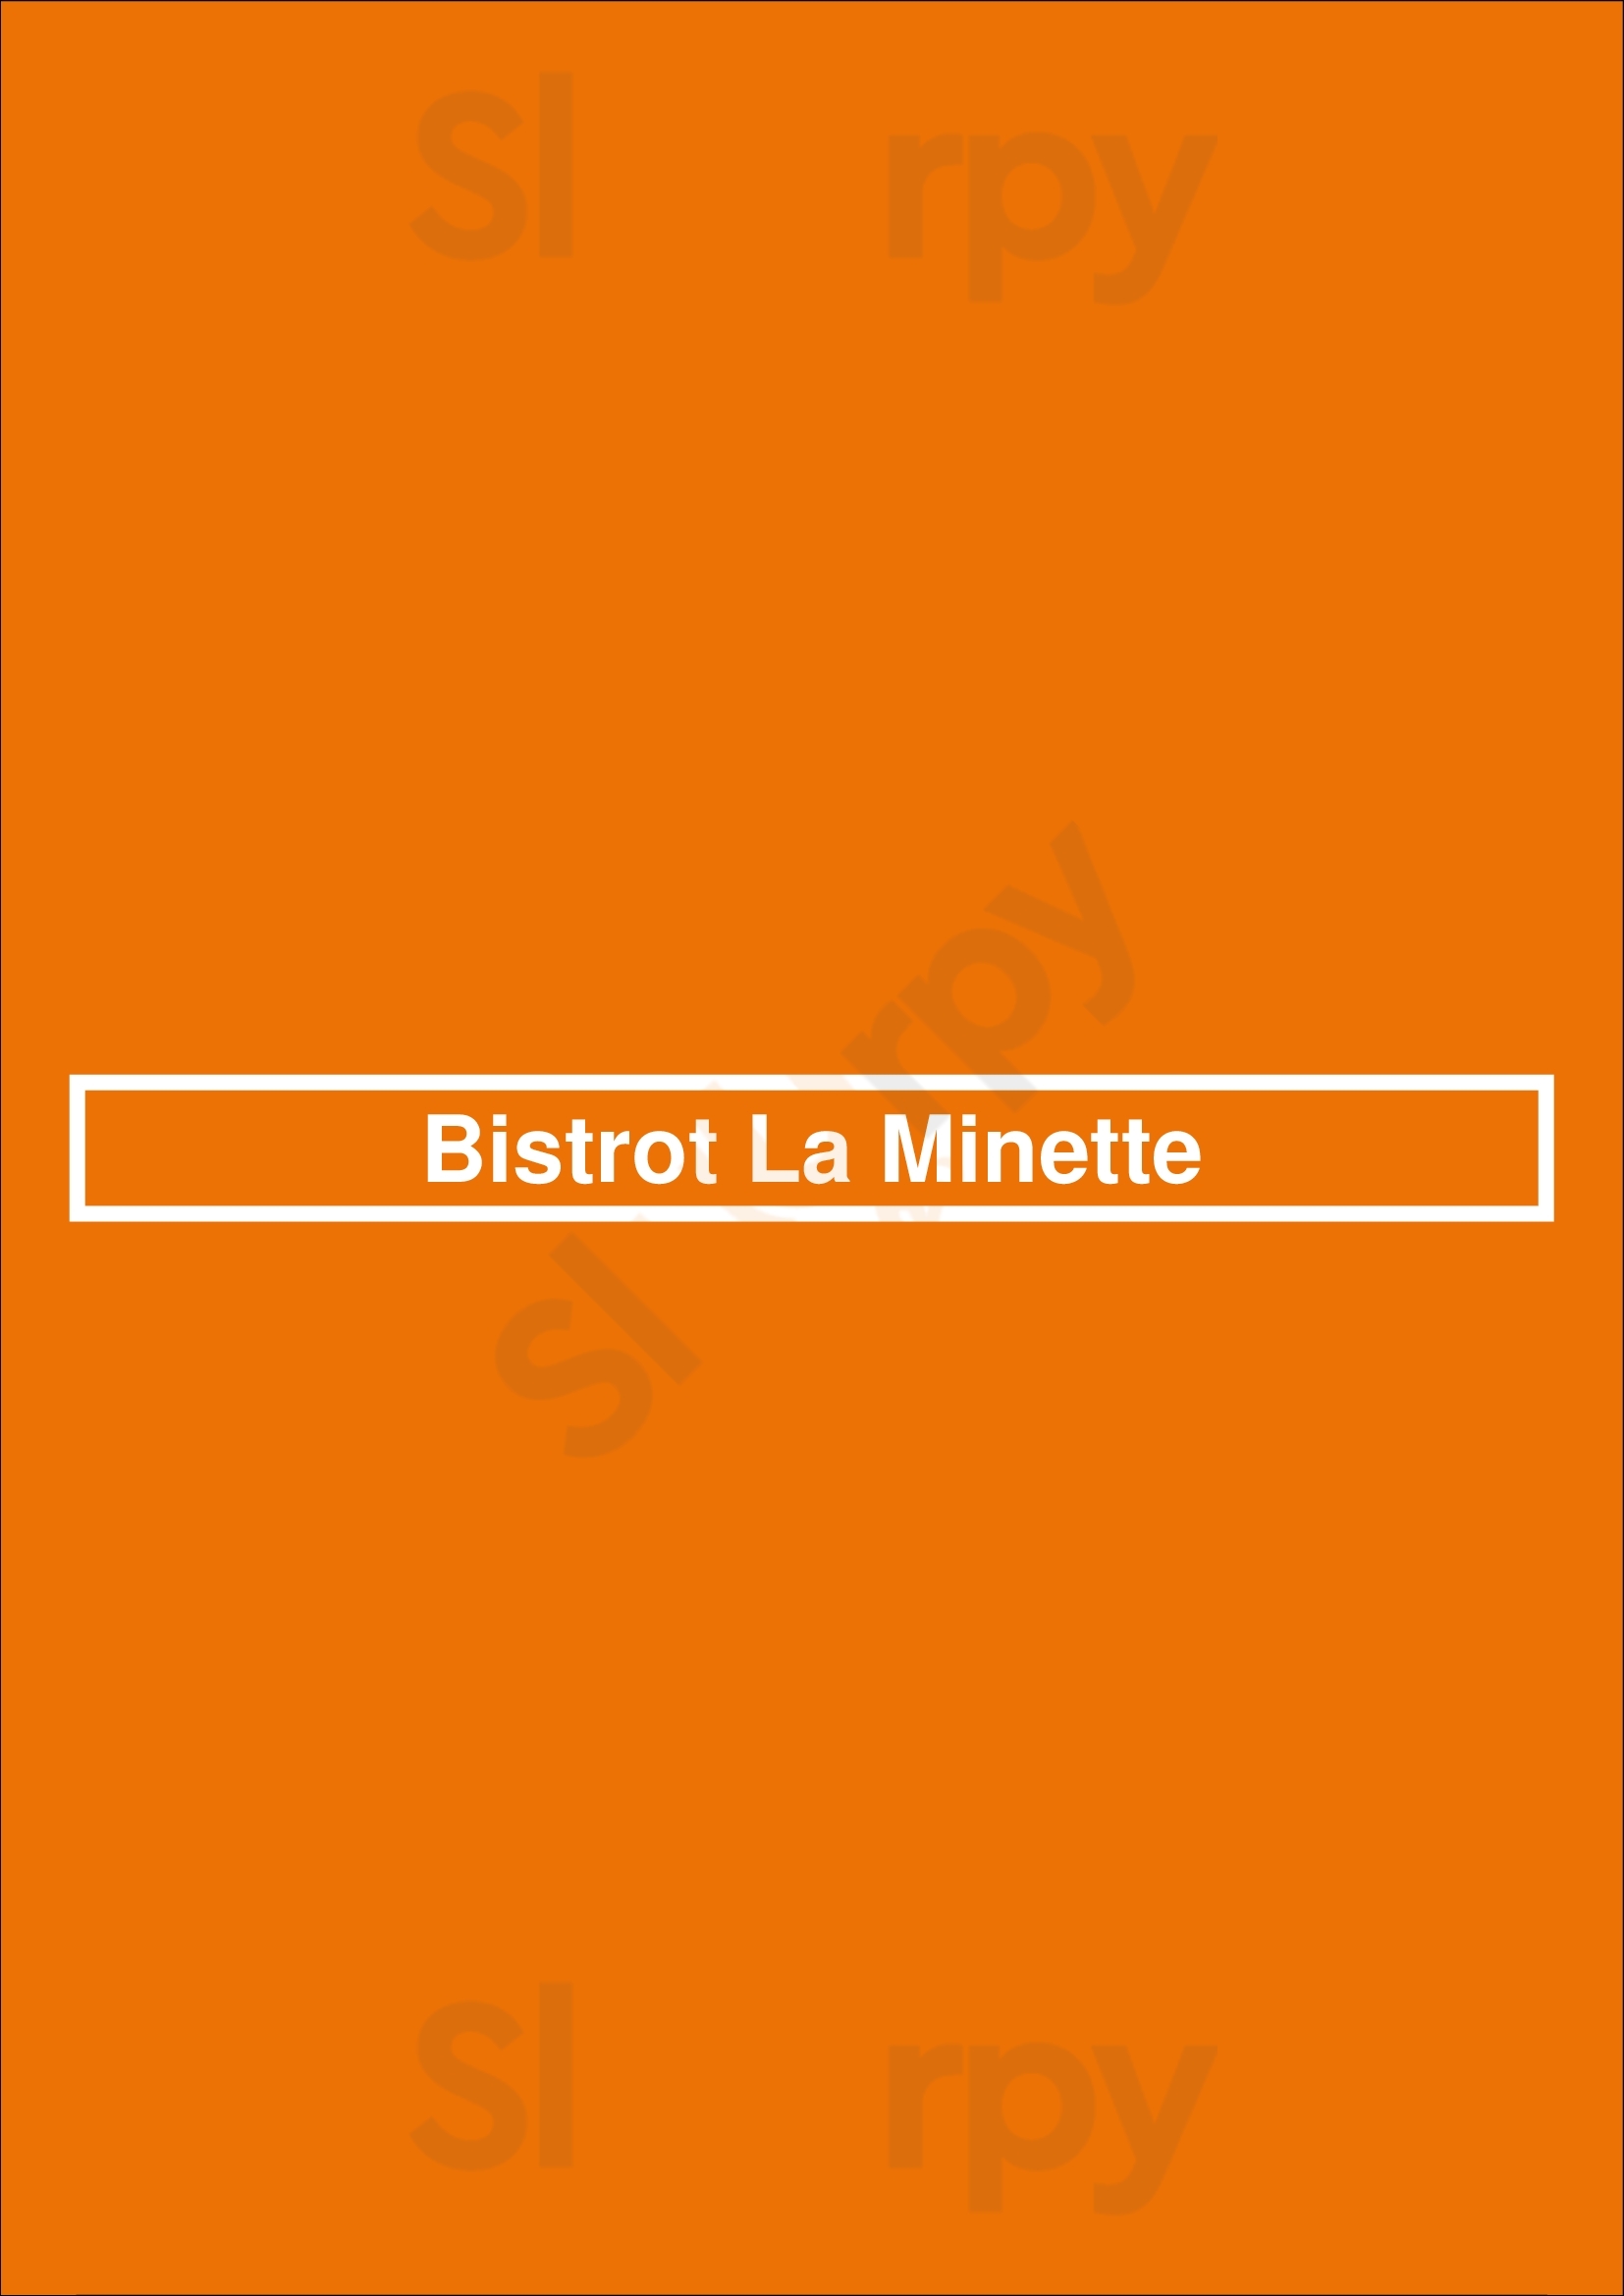 Bistrot La Minette Philadelphia Menu - 1